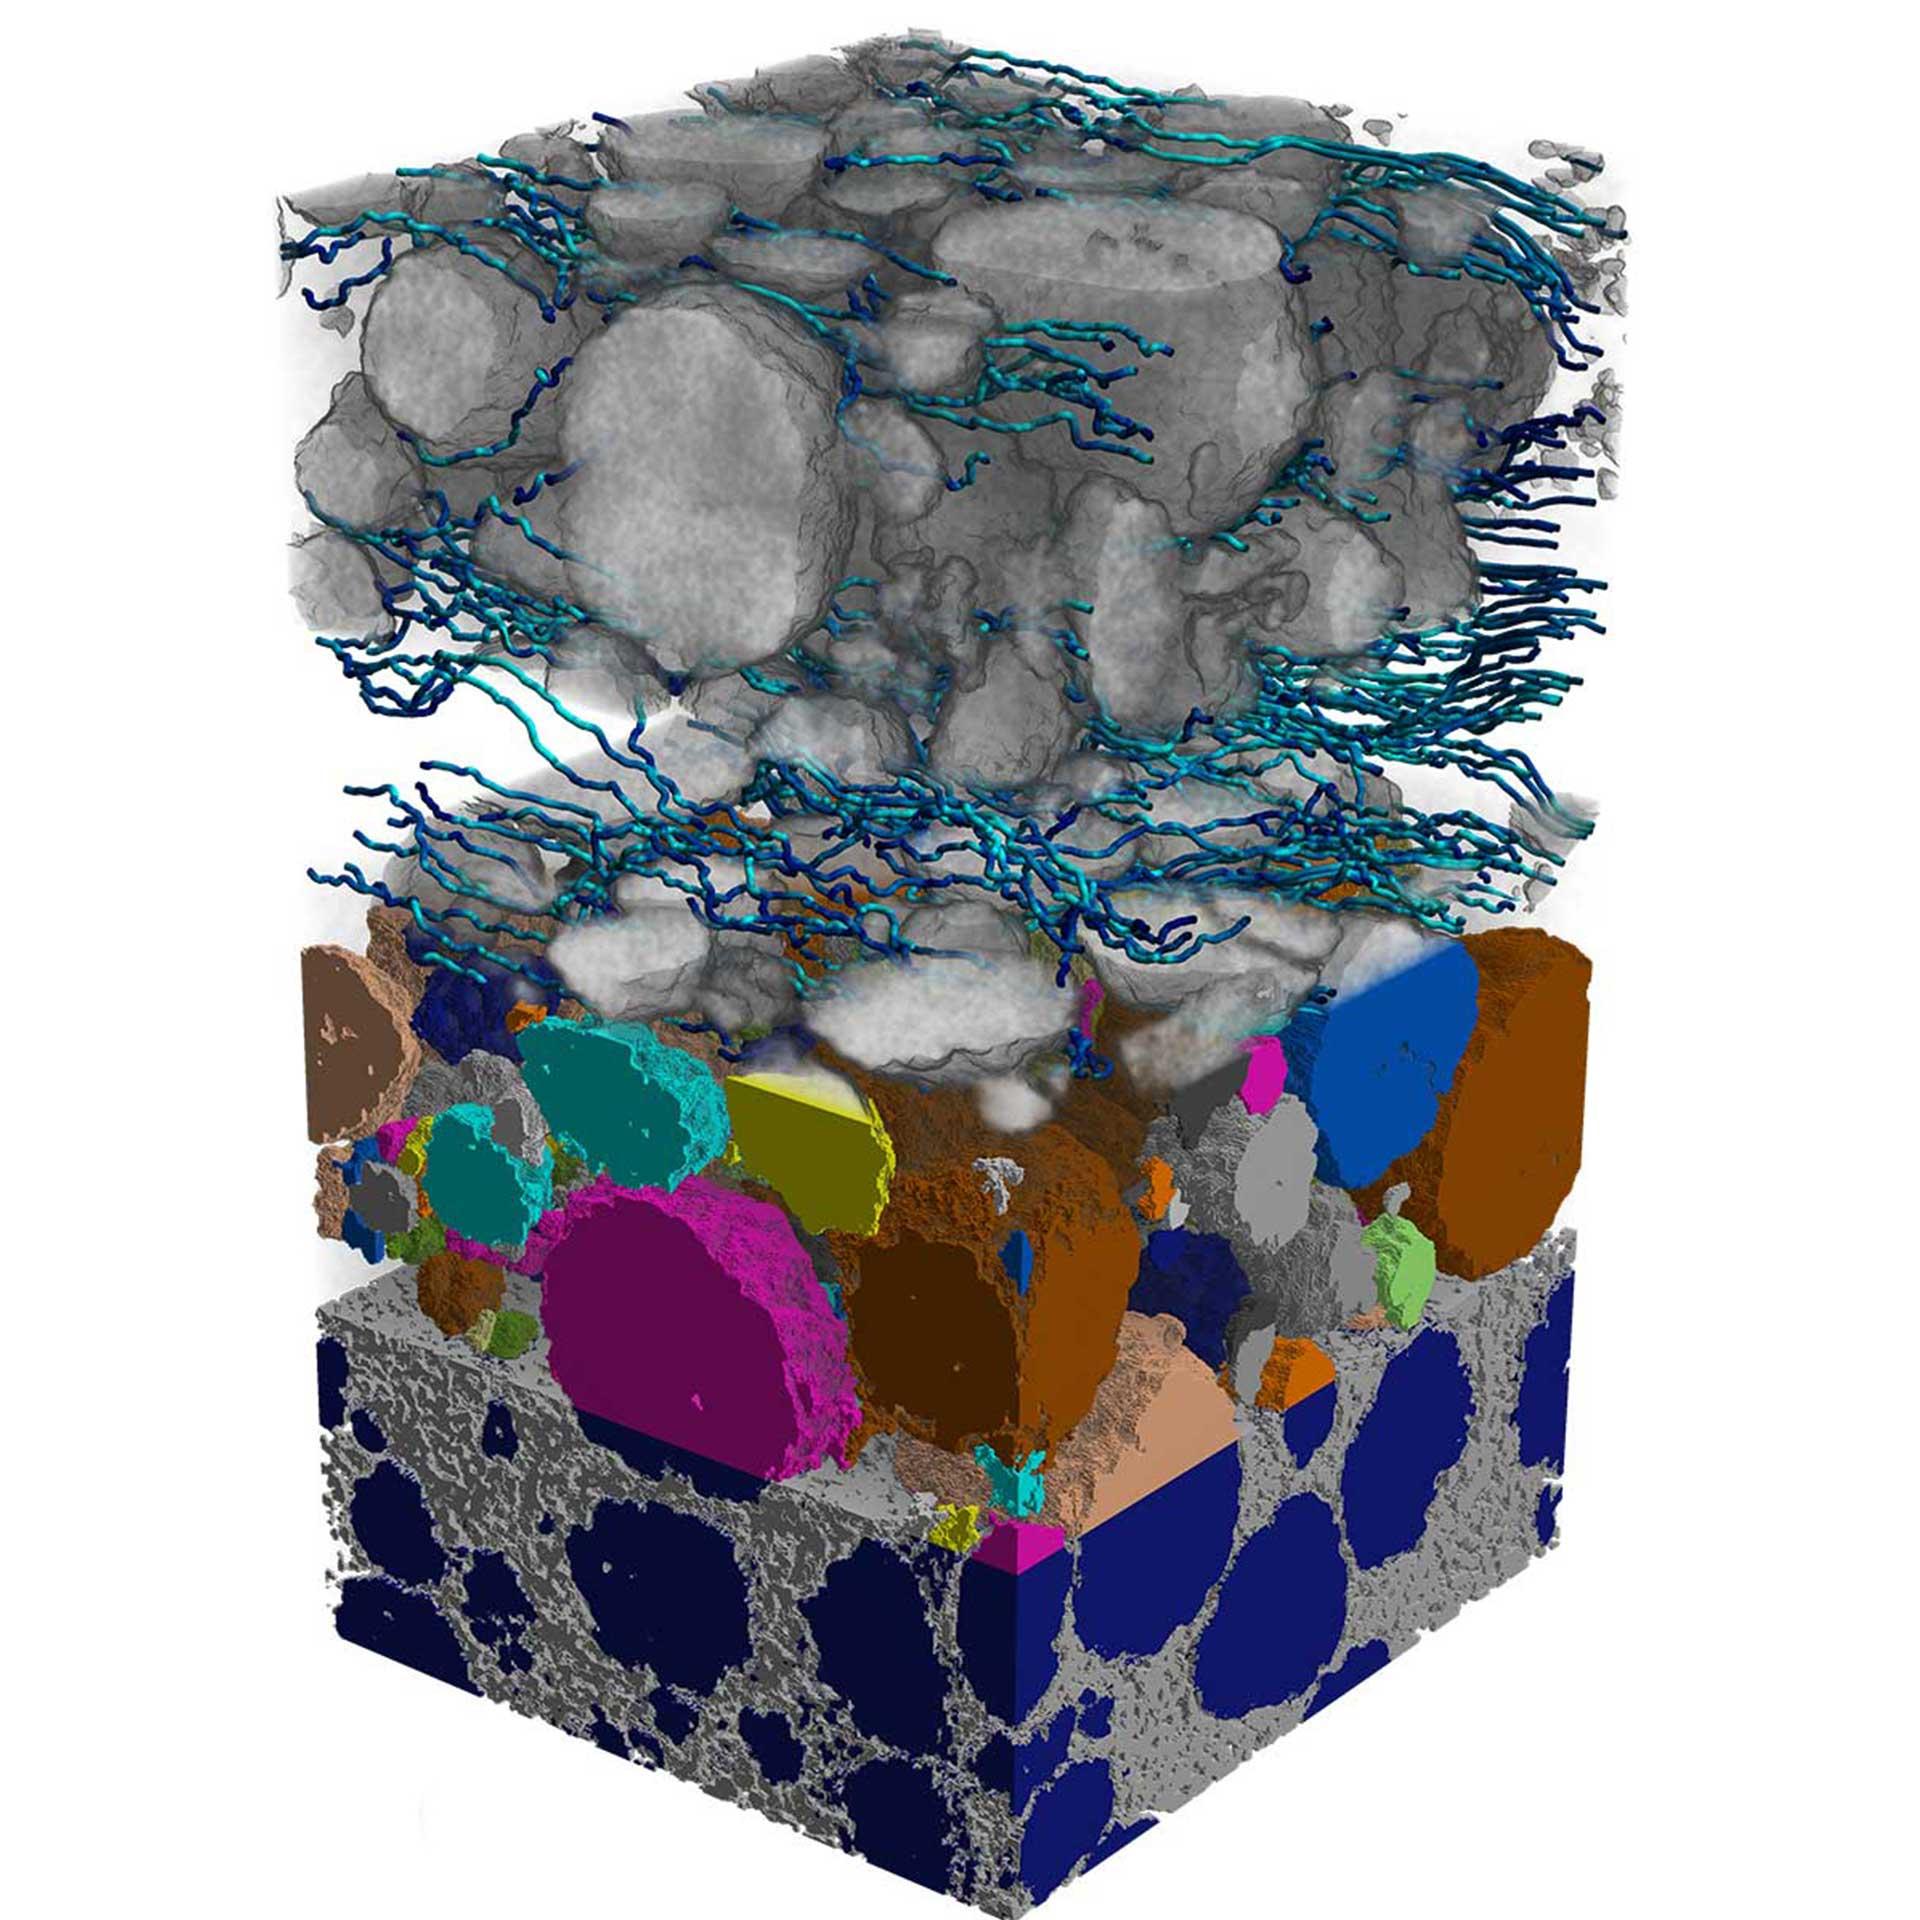 Réseau de pores de la cathode d'une batterie lithium-ion et diffusion simulée à travers le domaine du liant carbone. Image réalisée avec Xradia 810 Ultra (épaisseur d'échantillon de 71 µm).